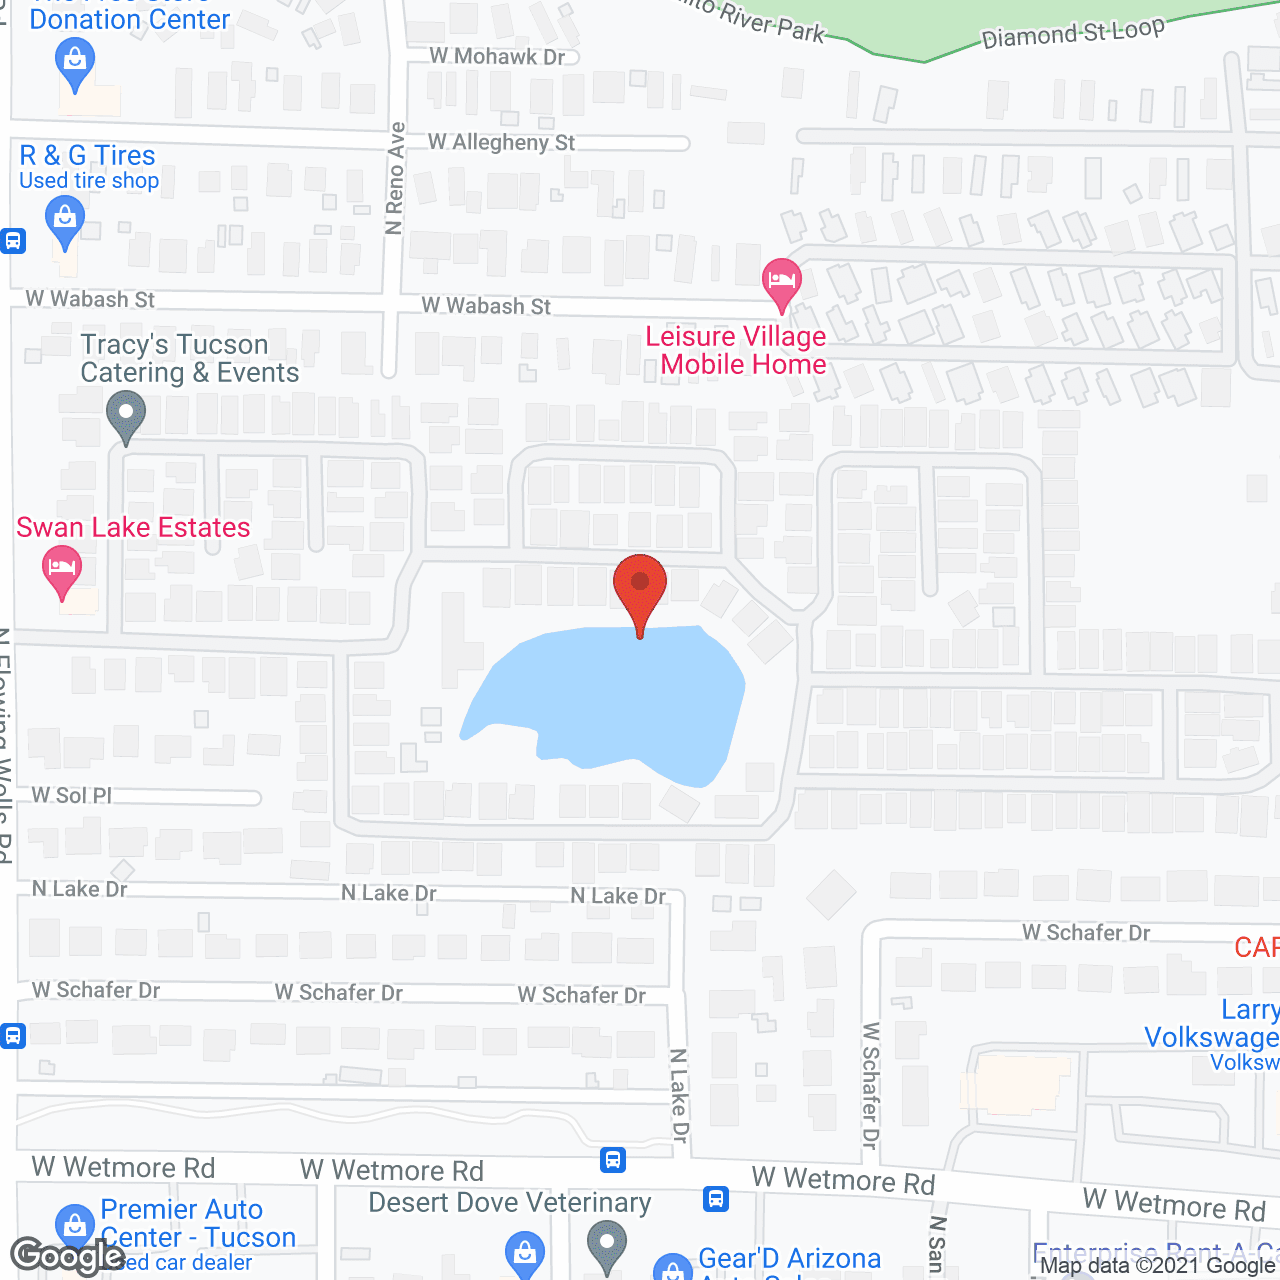 Swan Lake Estates in google map